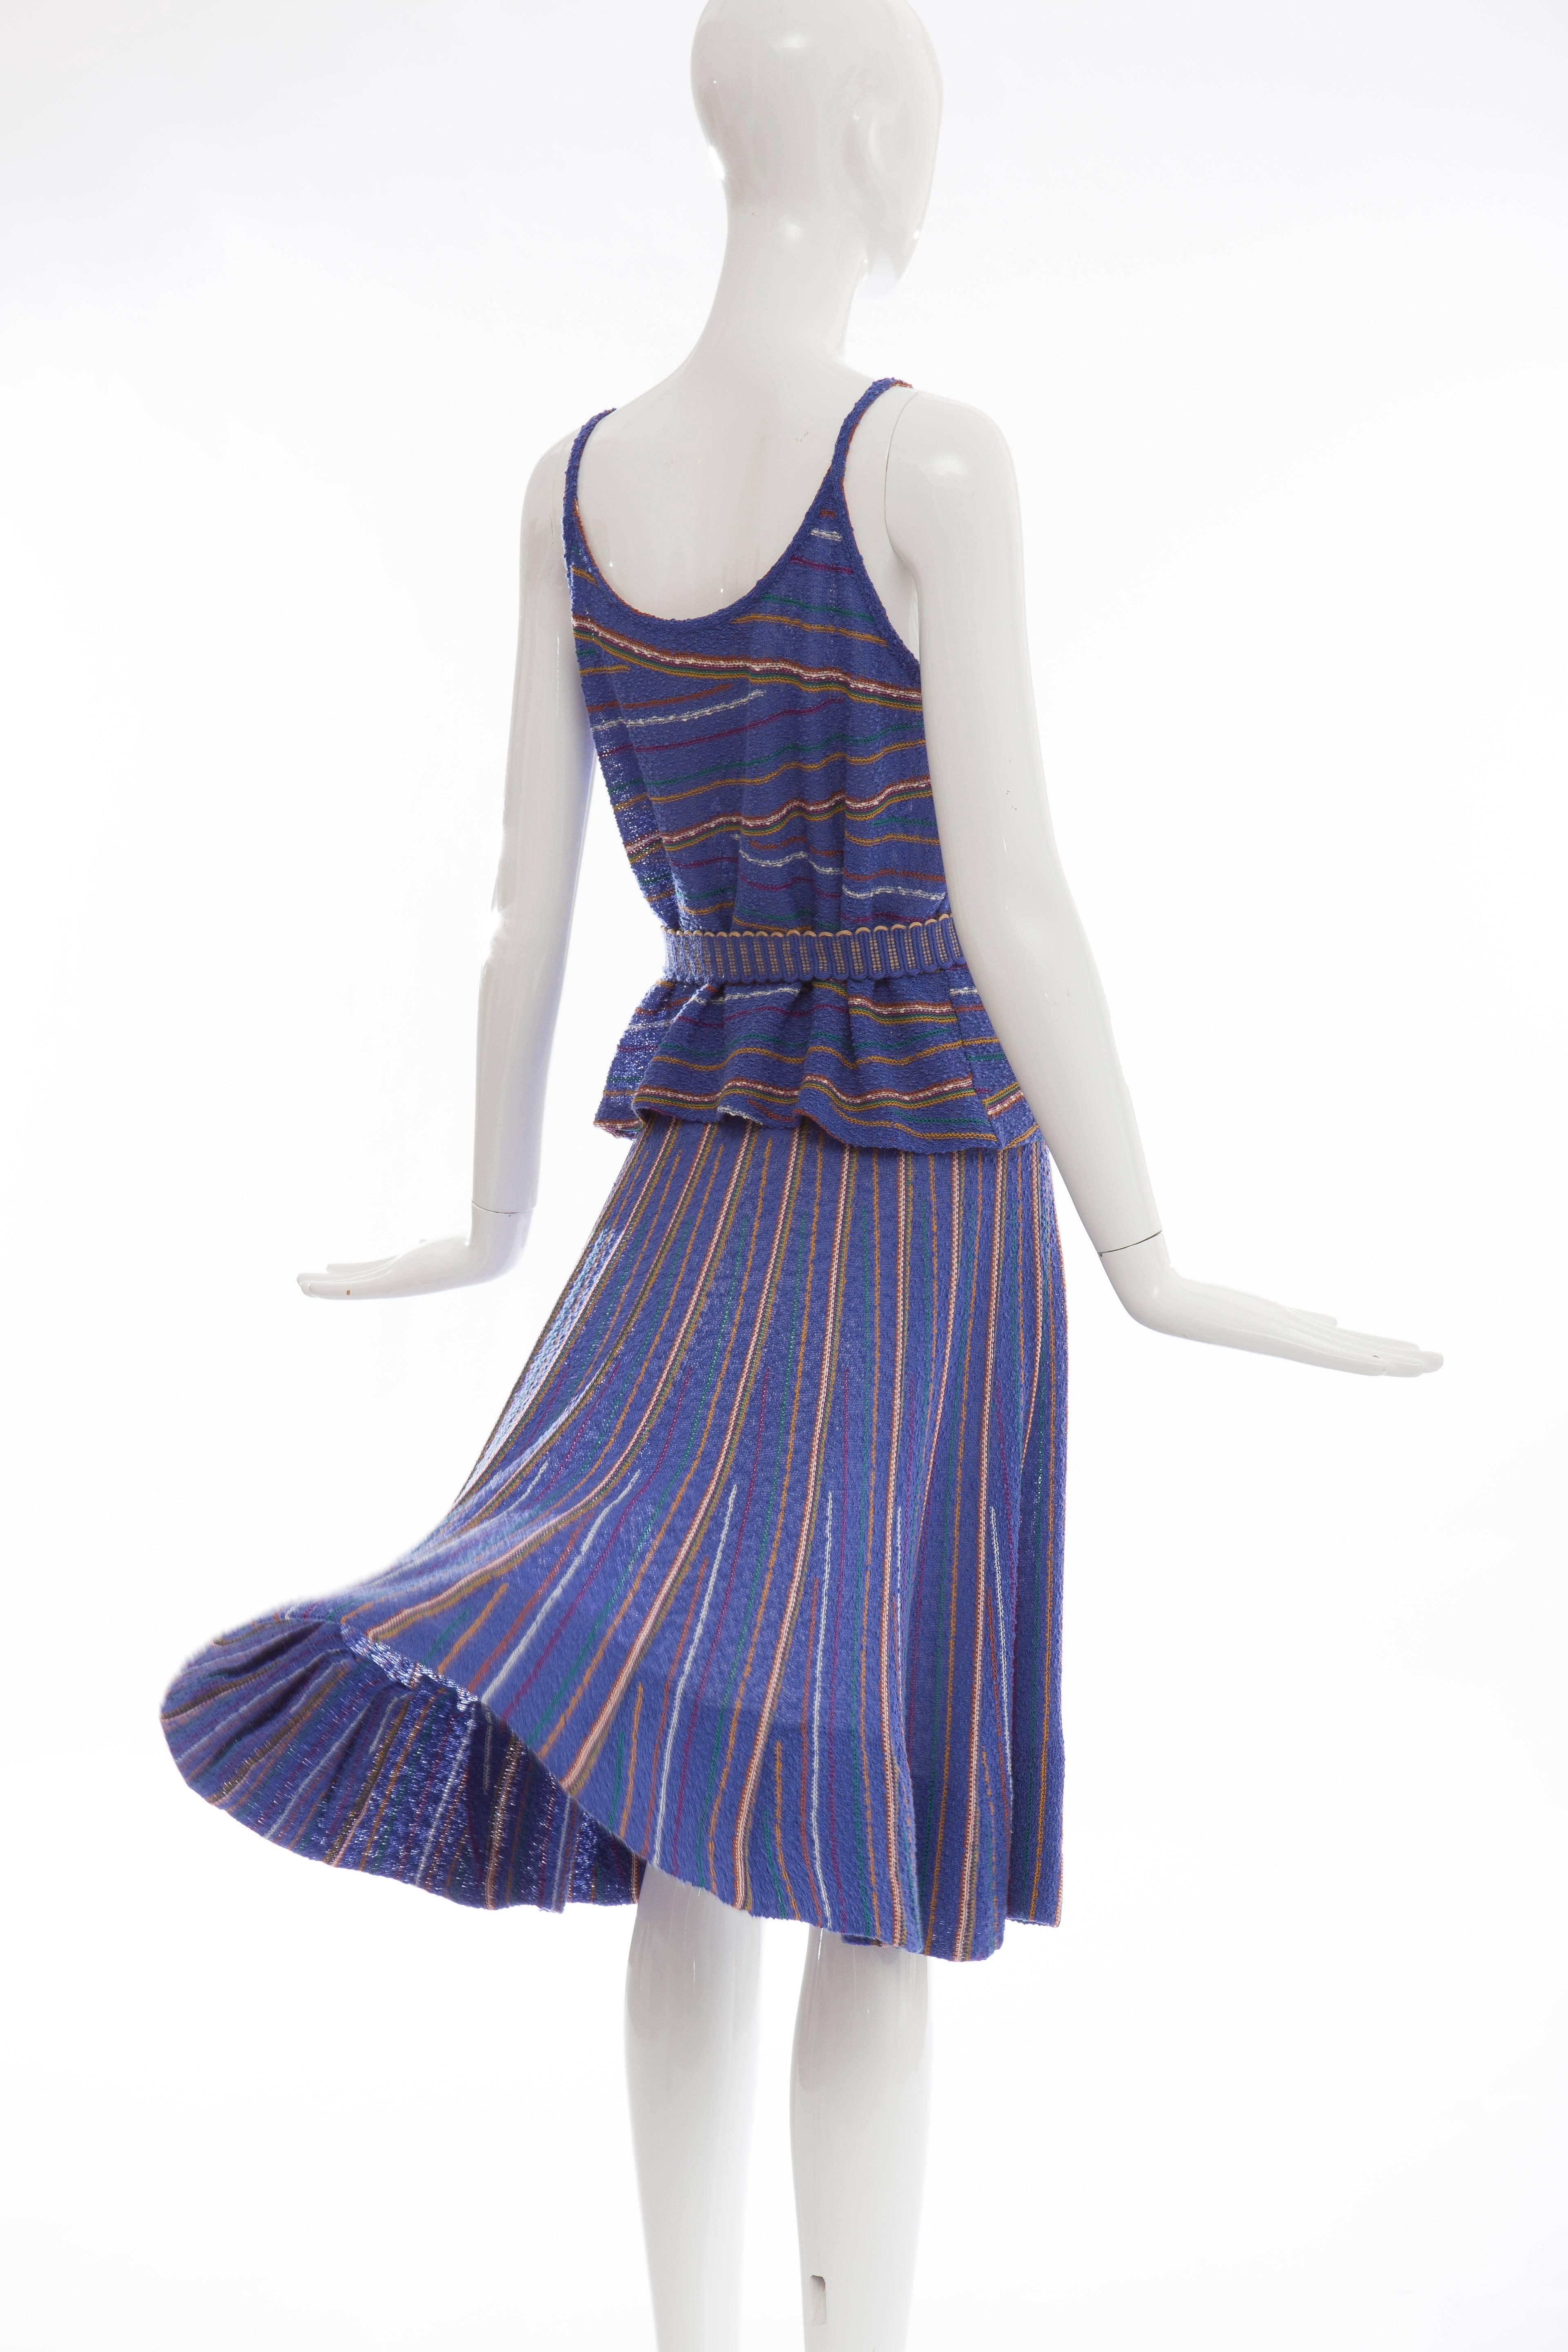 Missoni For Bonwit Teller Wool Nylon Linen Knit Skirt Suit,  Circa 1970s 4